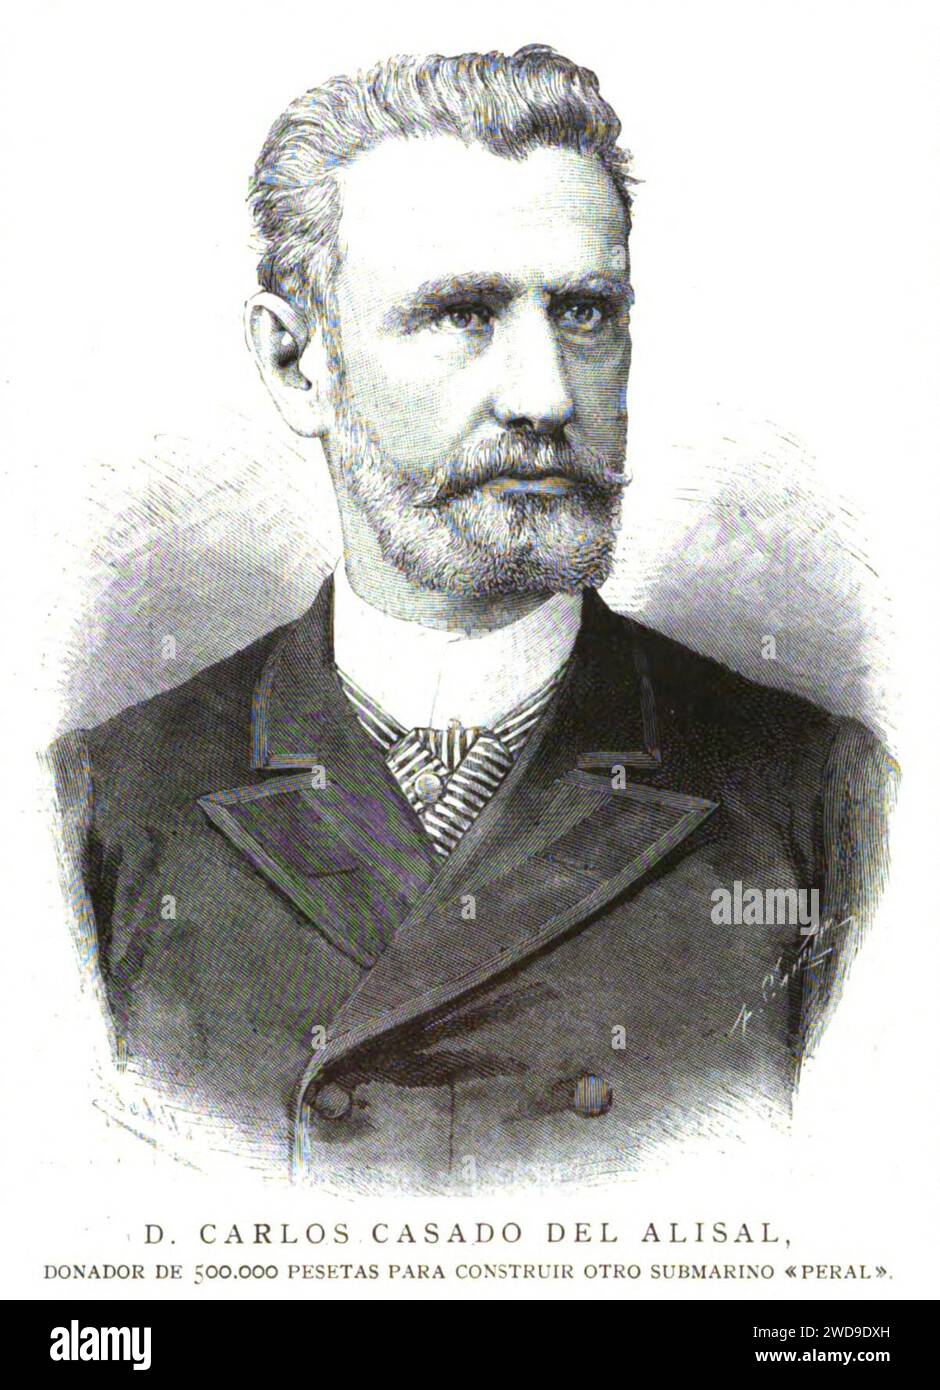 José María Casado del Alisal, AUTORRETRATO (1859)